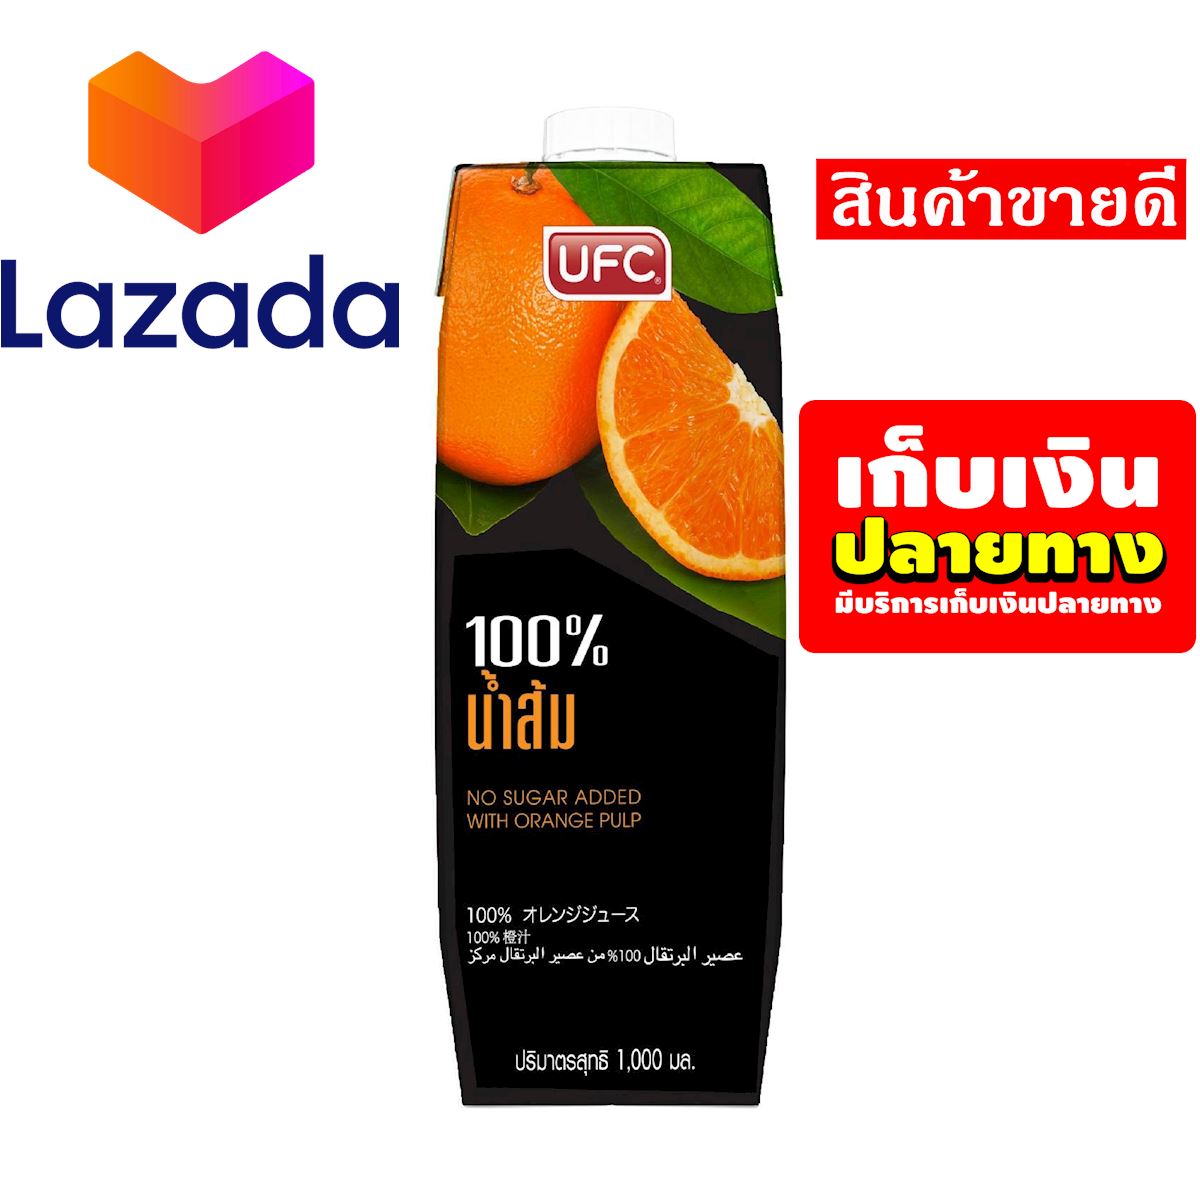 ⚫?ลดราคาพิเศษ!!❤️ น้ำผลไม้UFC น้ำส้ม 1000 มล. รหัสสินค้า LAZ-62-999FS ❤️จัดส่งพรุ่งนี้❤️